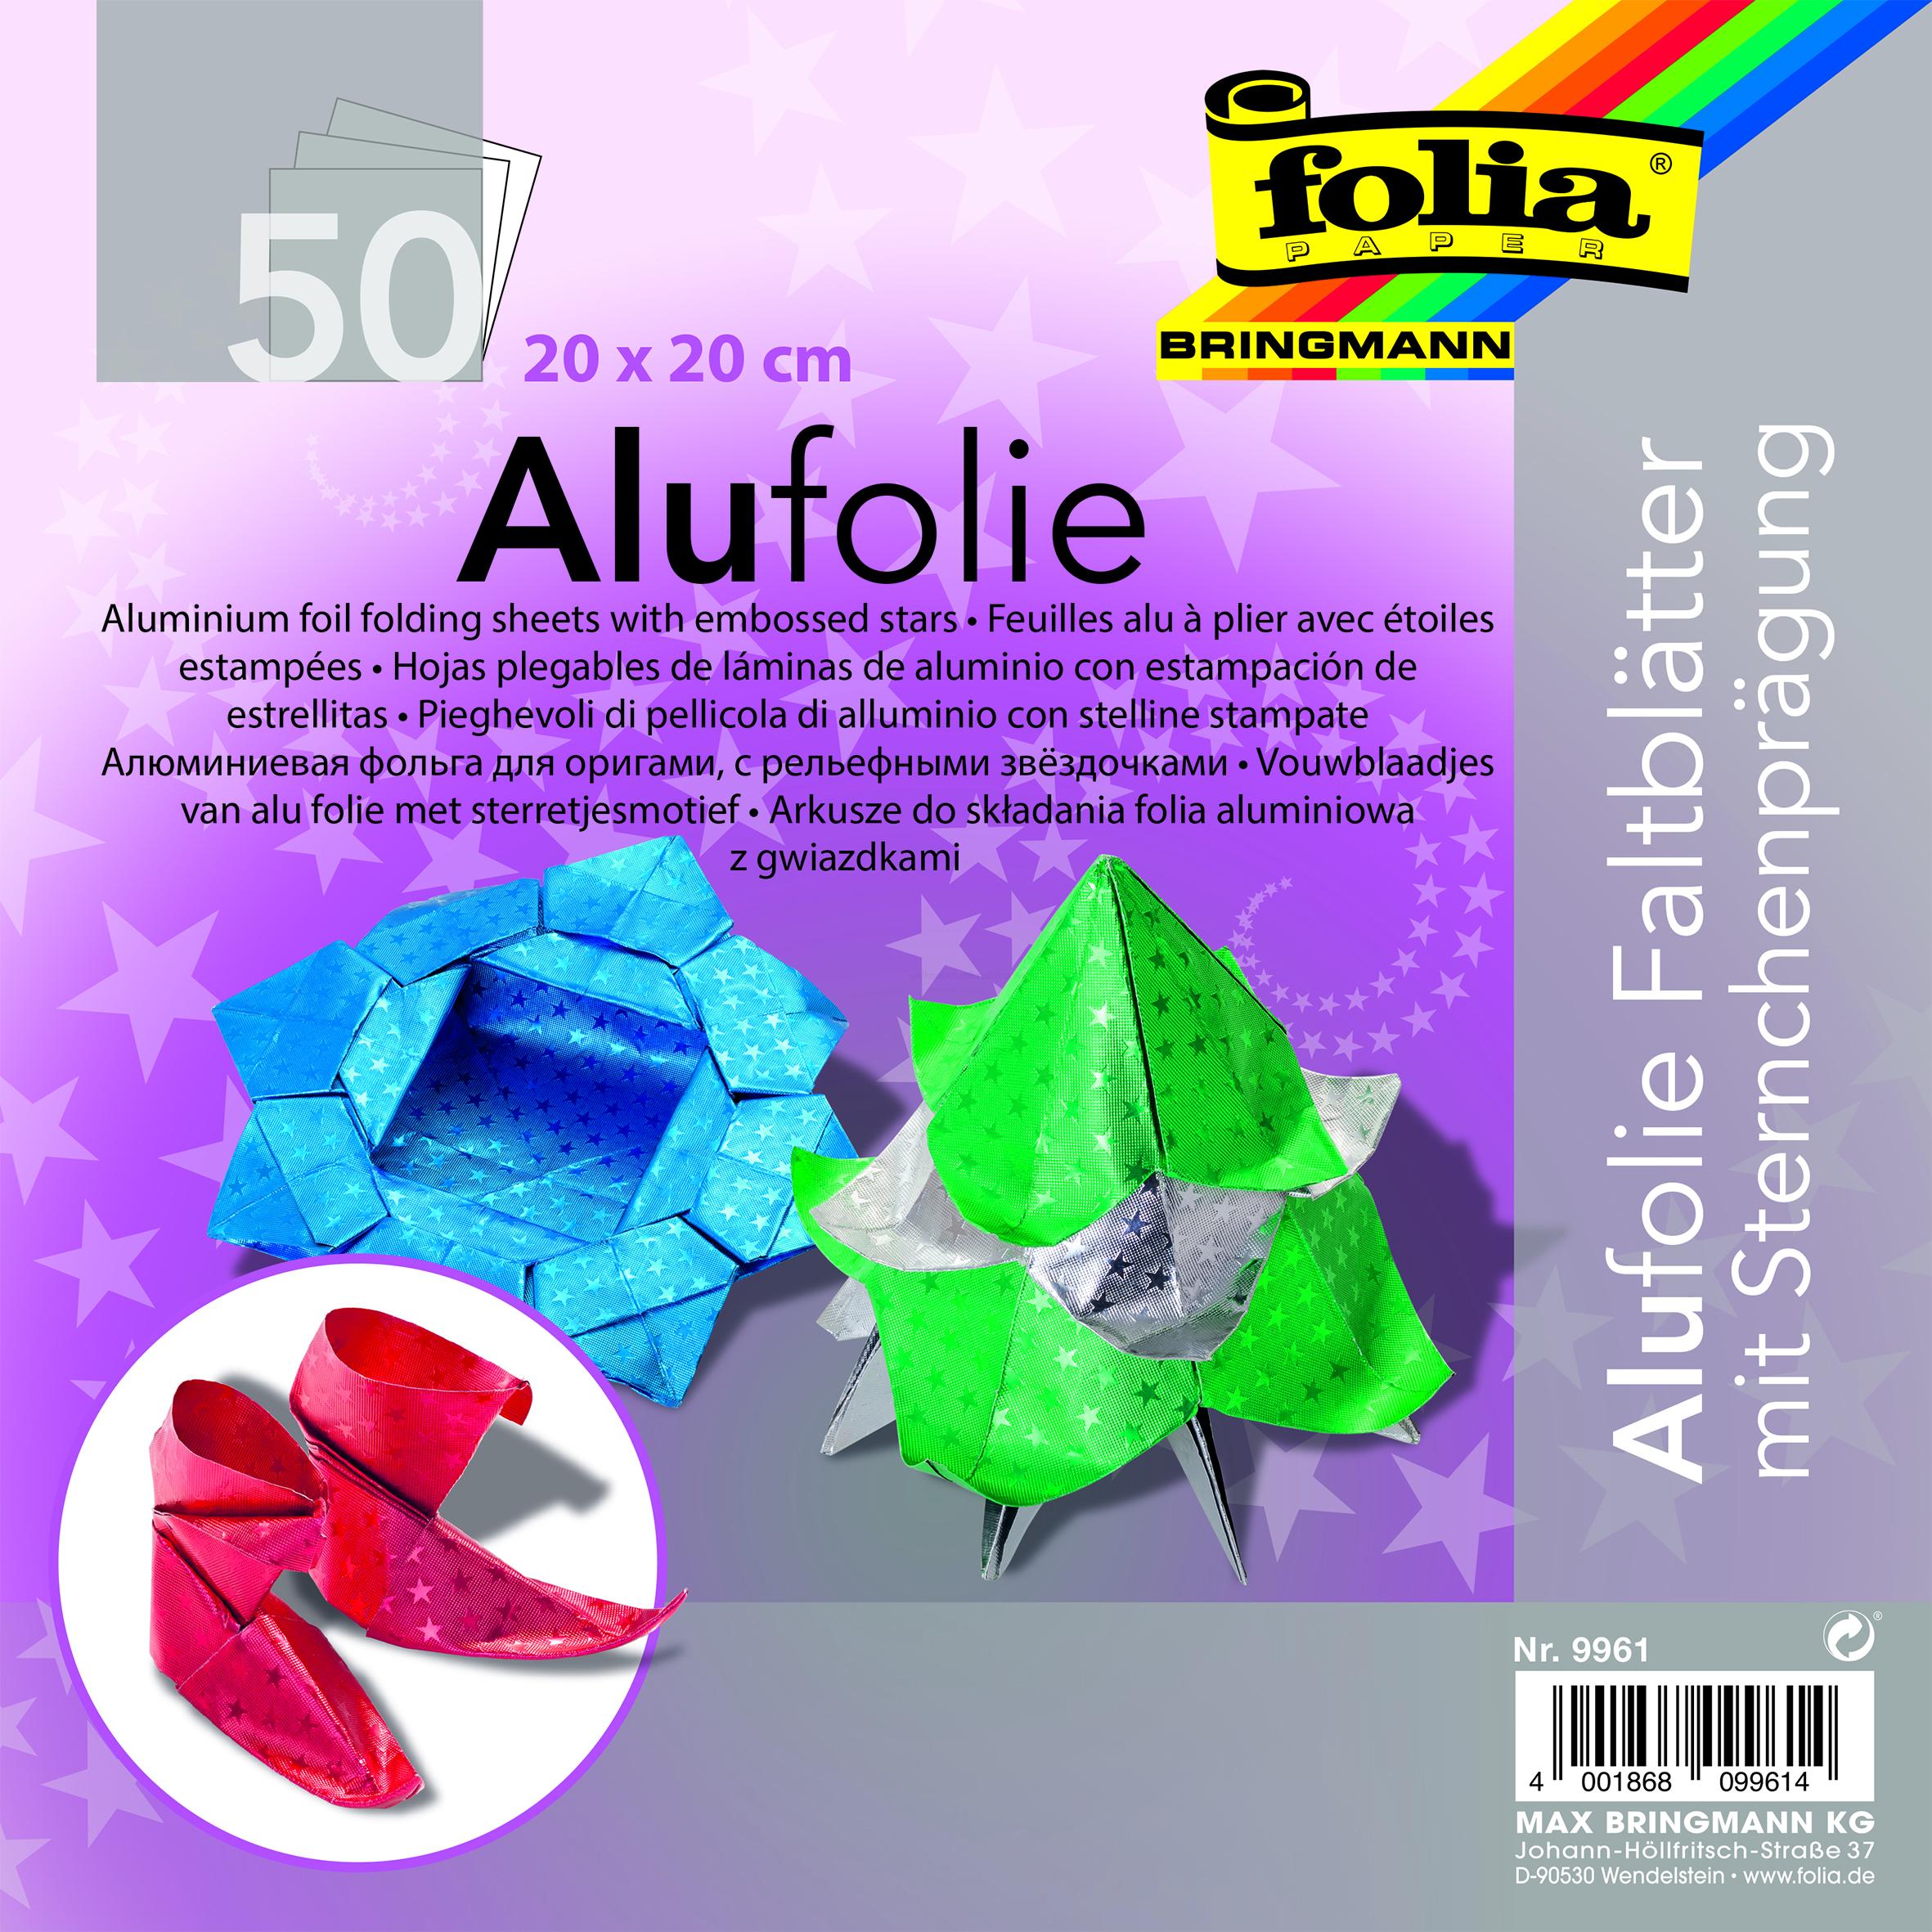 Origami papír 20x20 cm 50 archů z hvězdičkované alufolie v 5 barvách